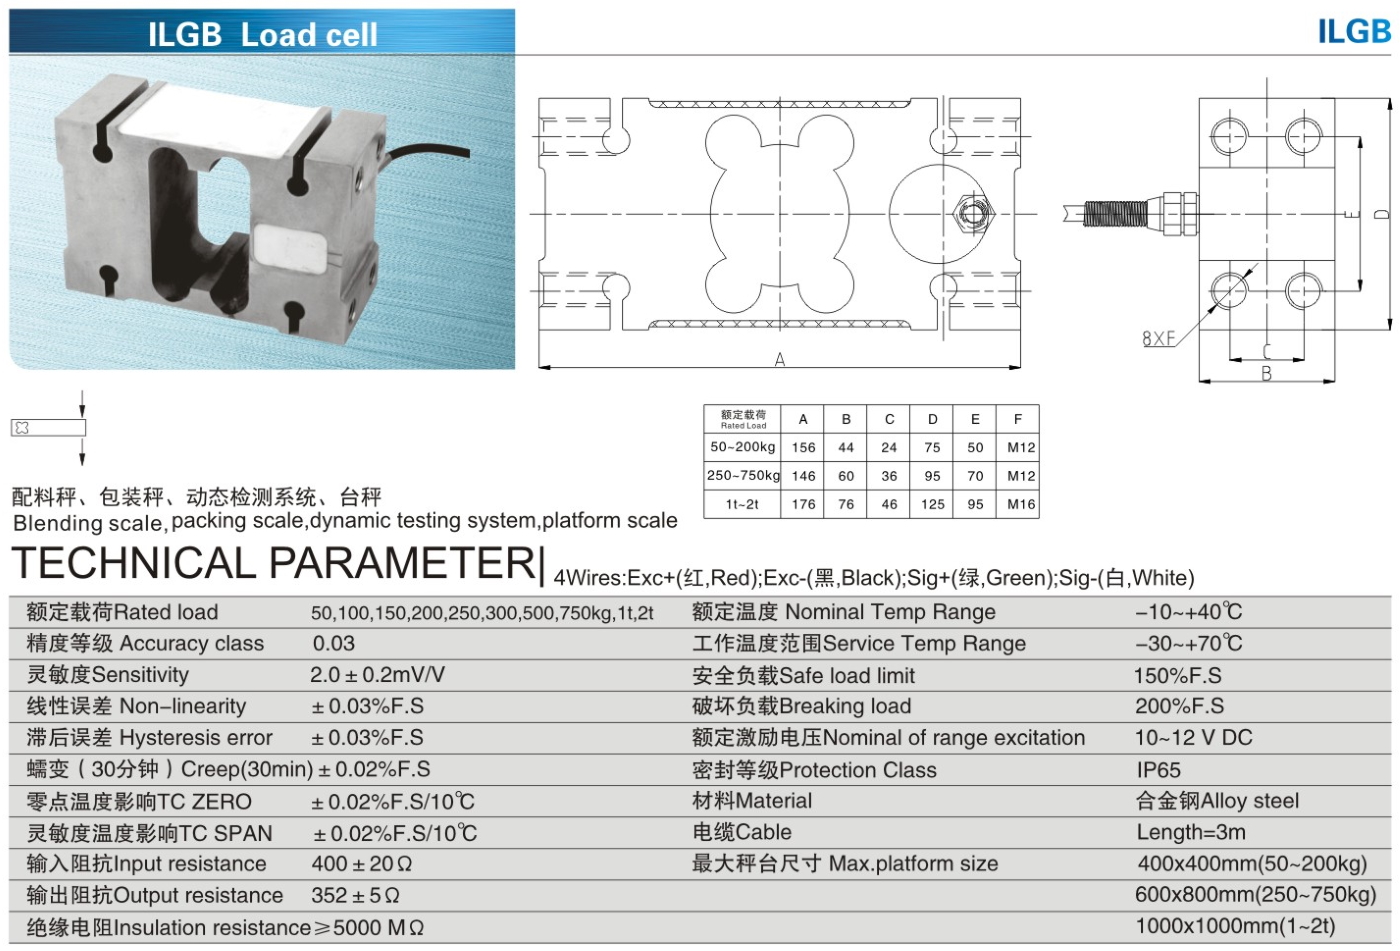 img/loadcell-images/alloysteel-singlepoint/KELI_ILGB_Loadcell-TTM_Teknoloji.jpg